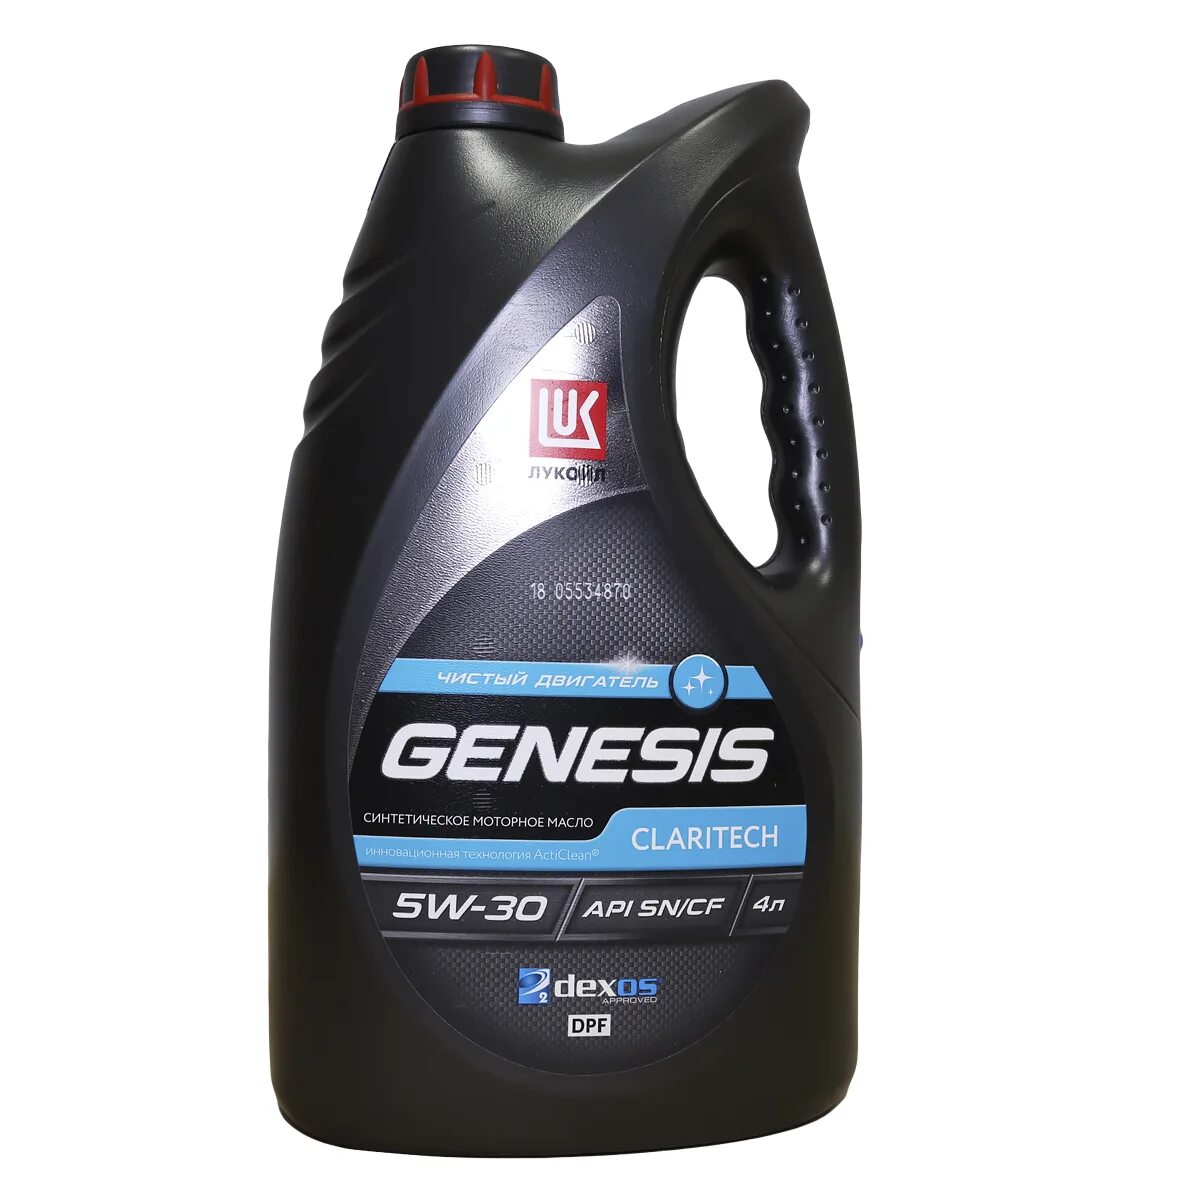 Lukoil Genesis 5w30. Lukoil Genesis Claritech 5w-30. Genesis Armortech 5w-30. Lukoil Genesis 5w30 Genesis. Масло лукойл sp